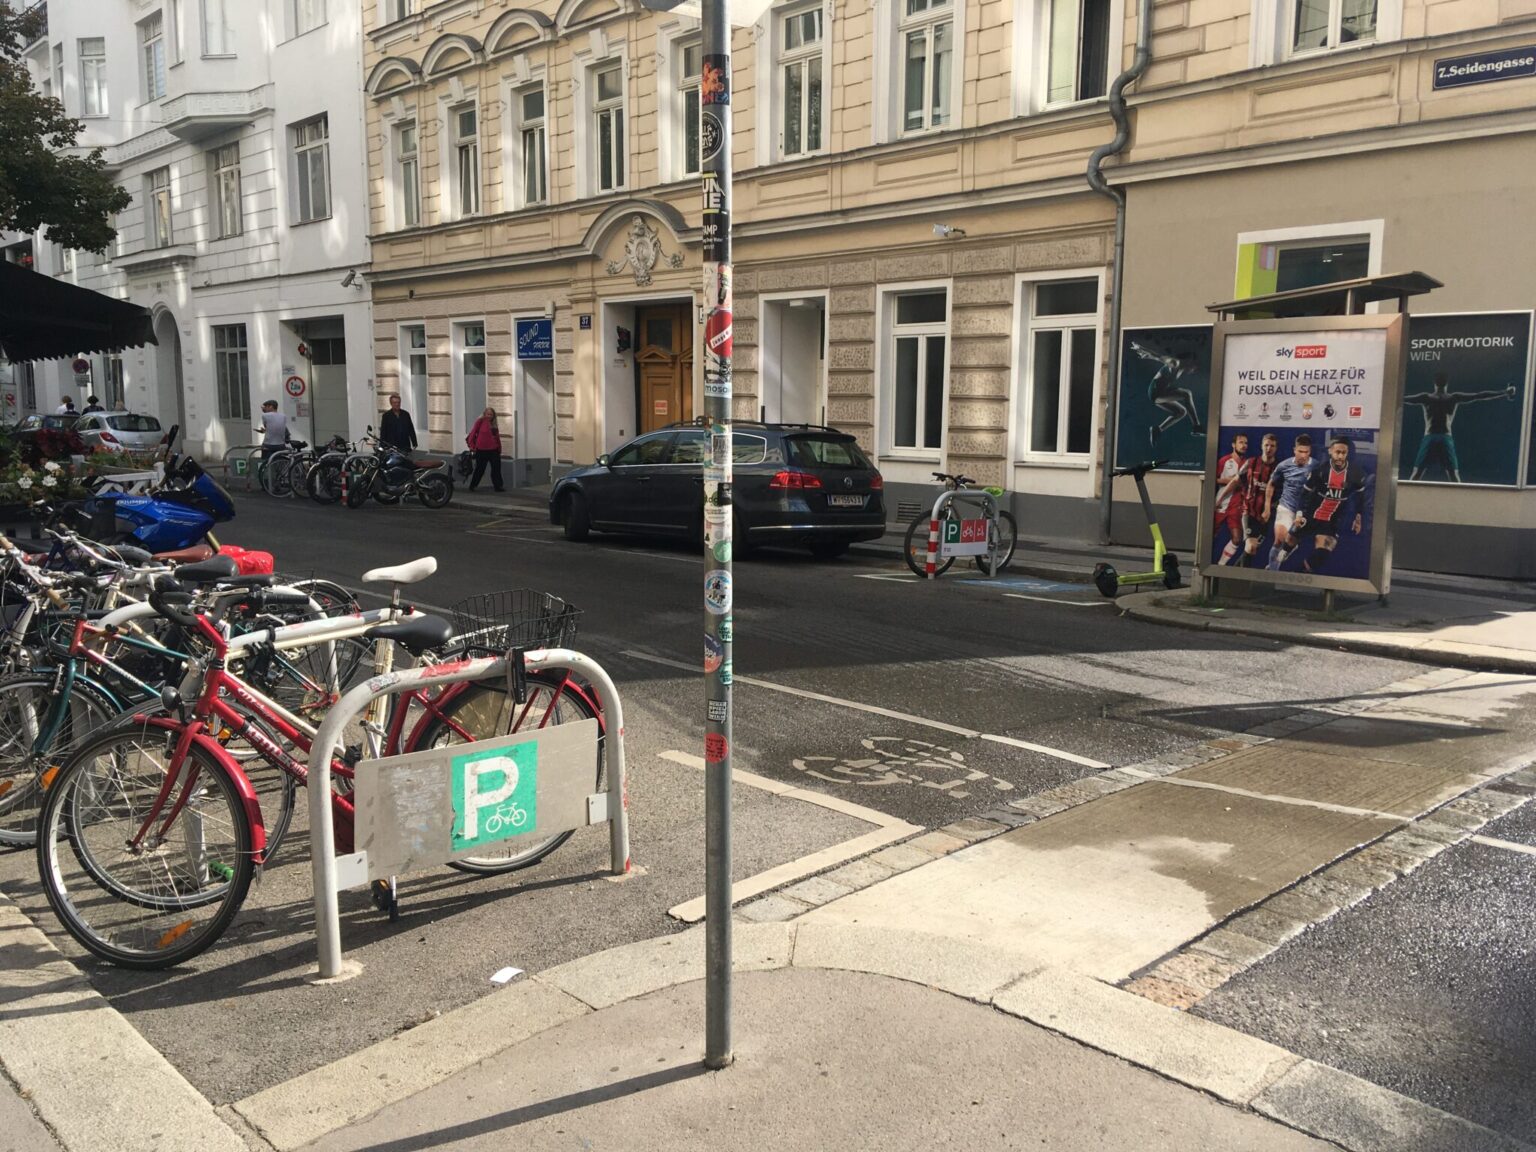 Parkování kol na ulici po celý den je zcela přirozenou součástí cyklistického města. A to i v nedaleké Vídni. Proč by to nemohlo jít v Praze, říkal jsem si. Zdroj: Jiří Motýl